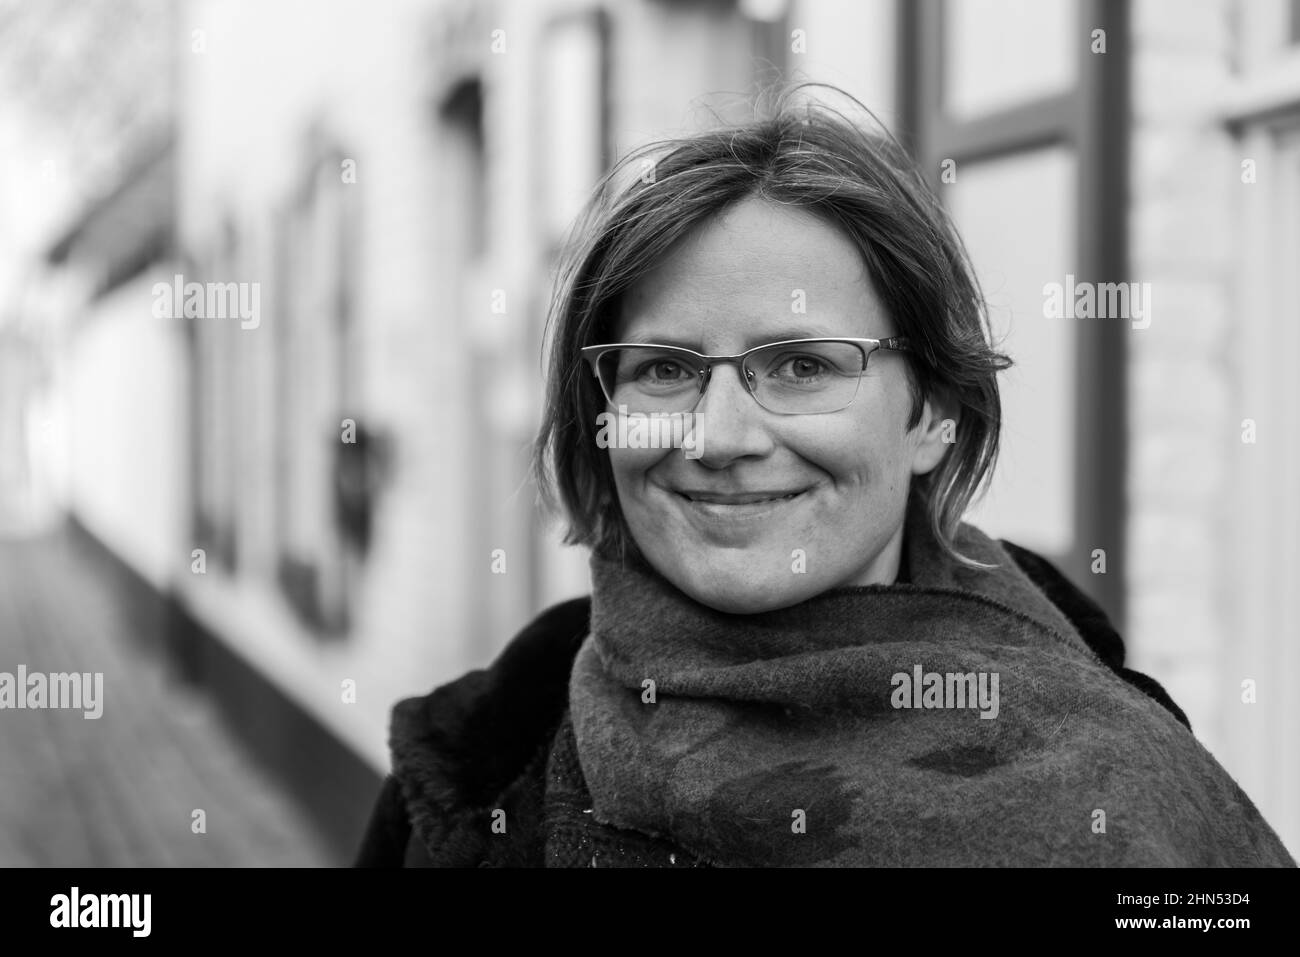 Jeune belle femme de 30 ans debout dans une rue, Lissewege, Belgique Banque D'Images